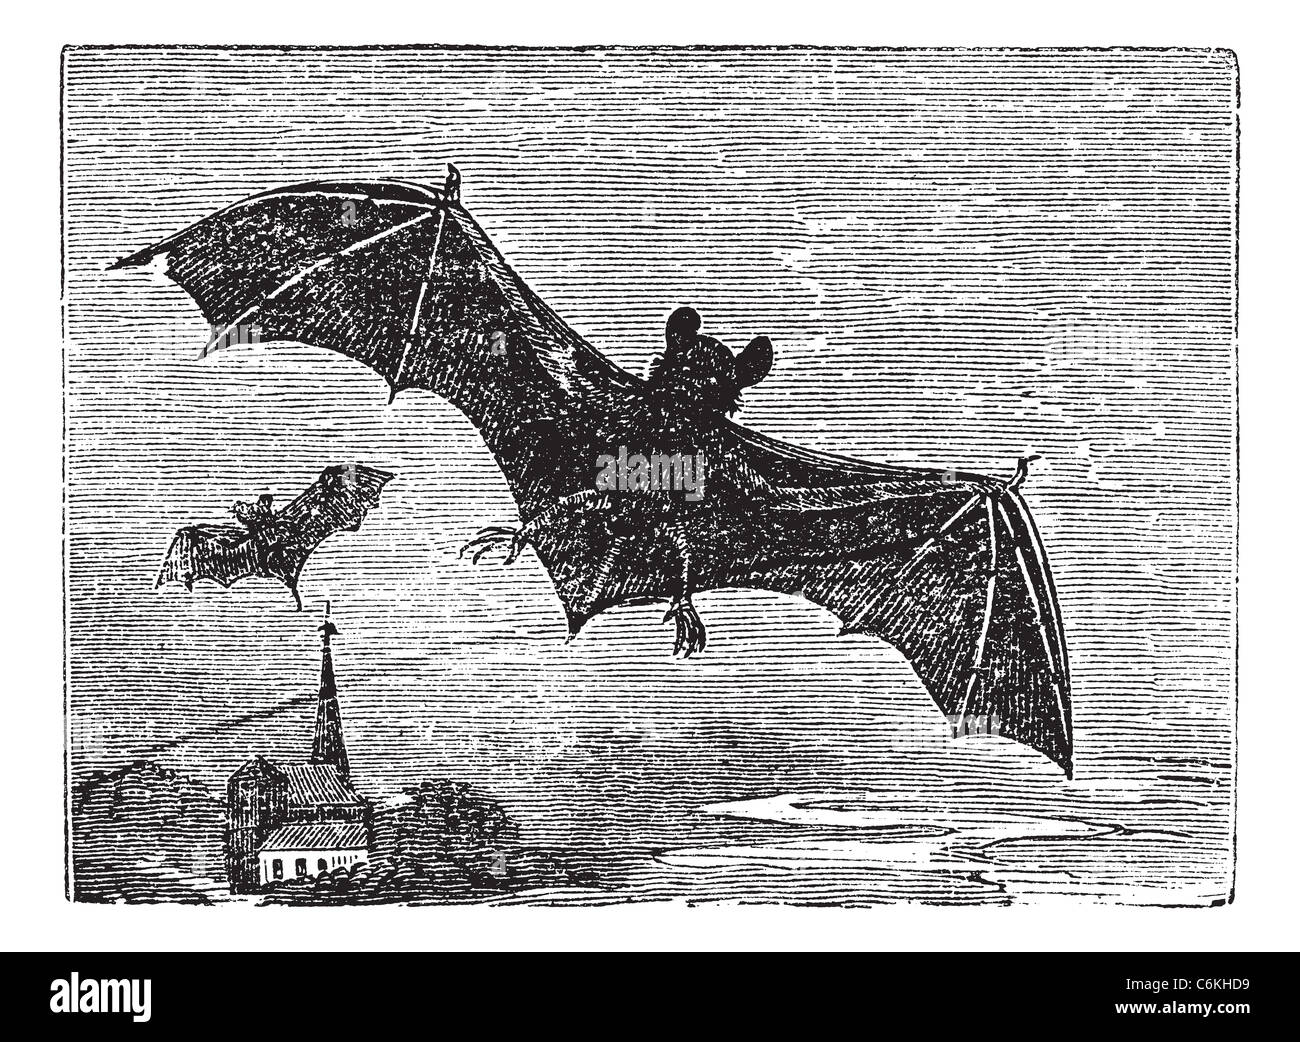 Common Bat or Vesper Bat or Evening Bat or Vespertilionidae, vintage engraving. Old engraved illustration of a Vesper Bat. Stock Photo